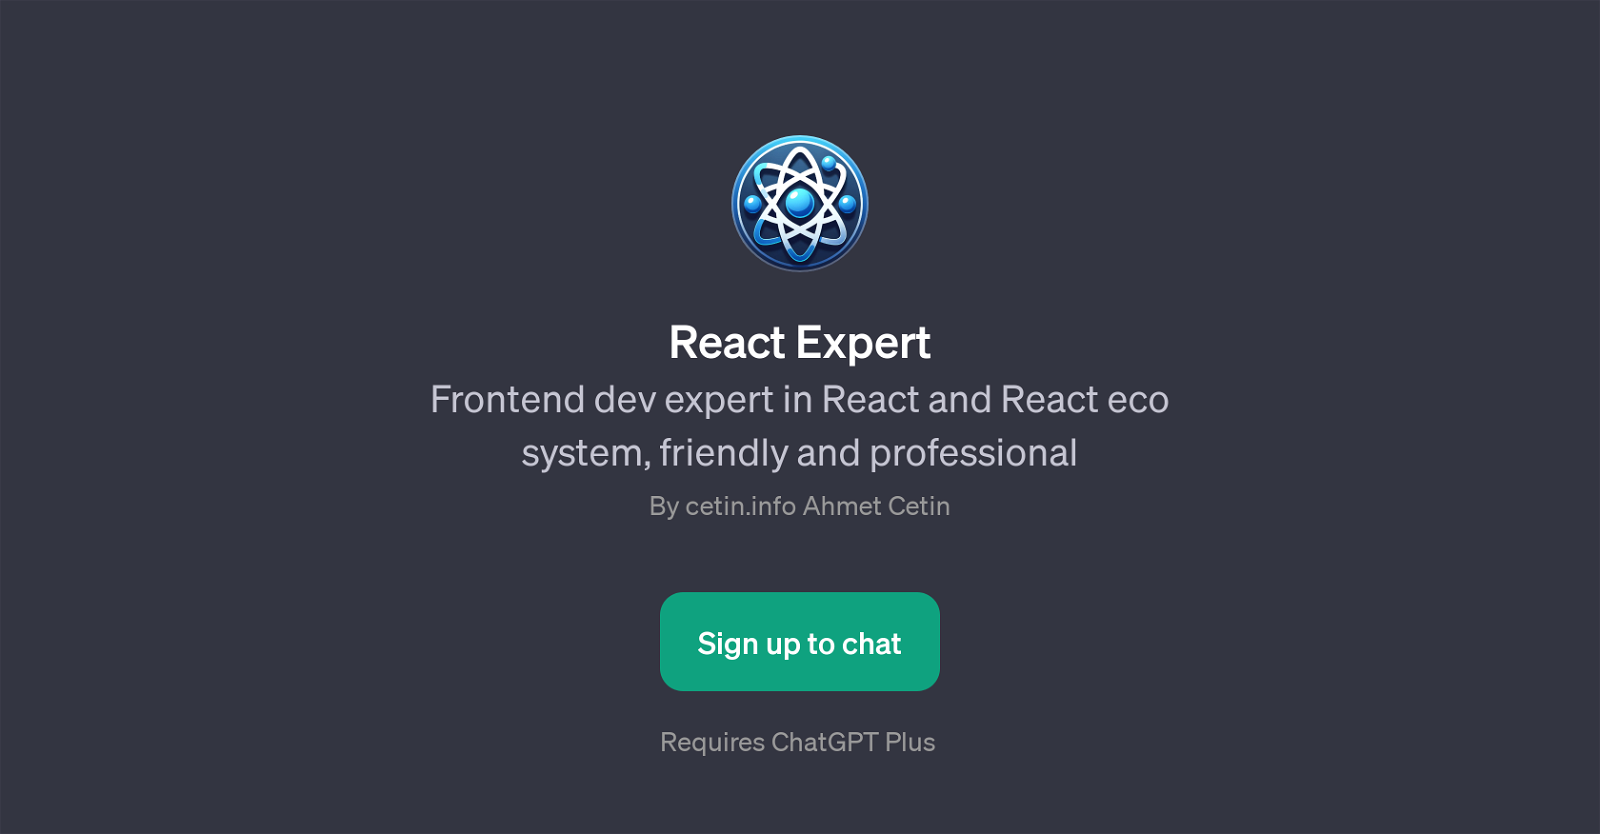 React Expert website